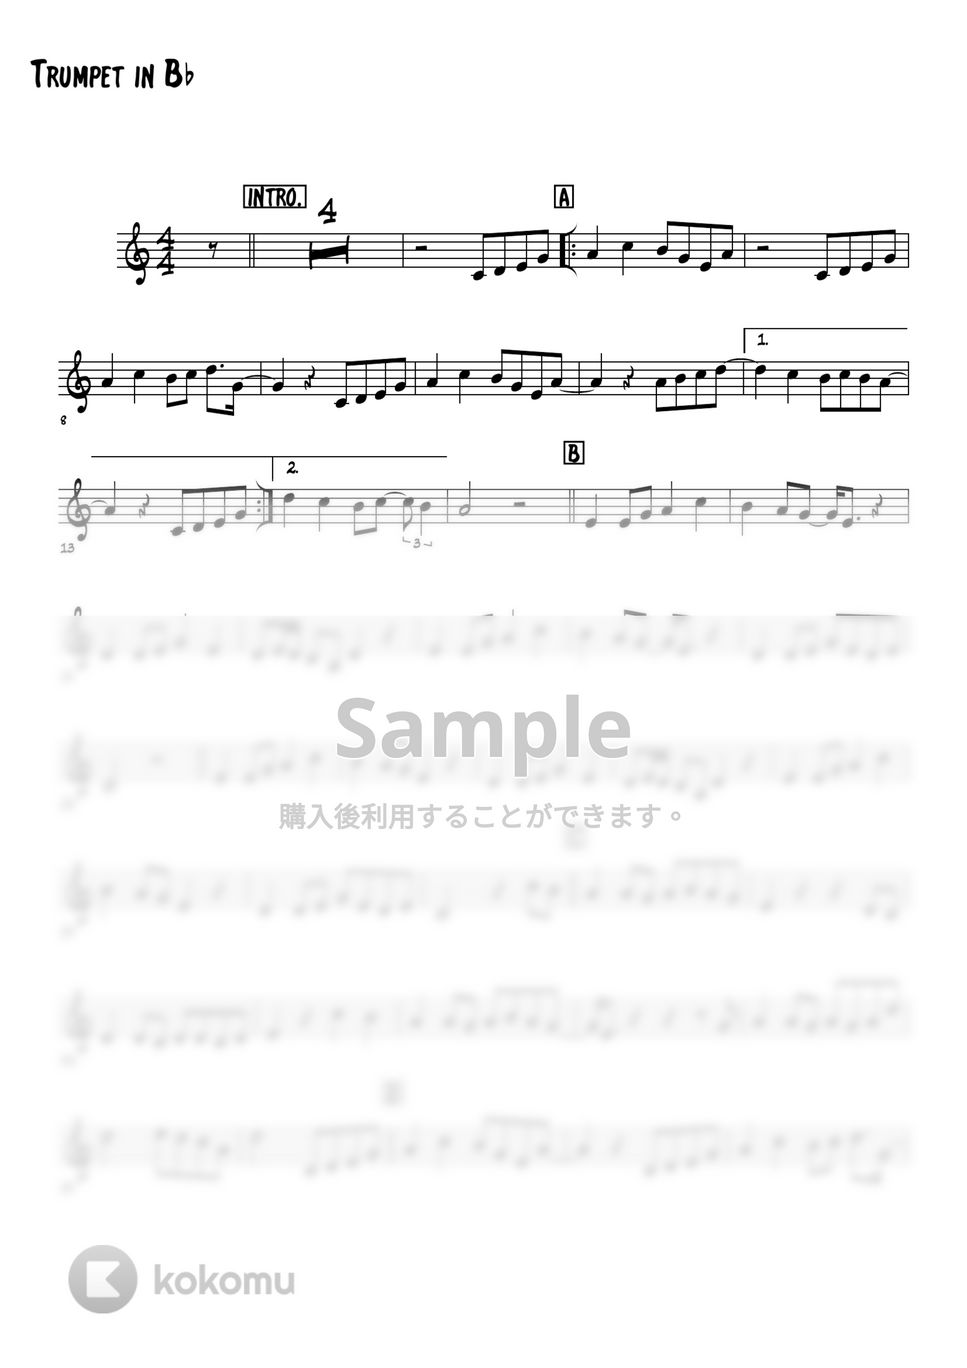 スターダストレビュー - 木蘭の涙 (トランペットメロディー楽譜) by 高田将利